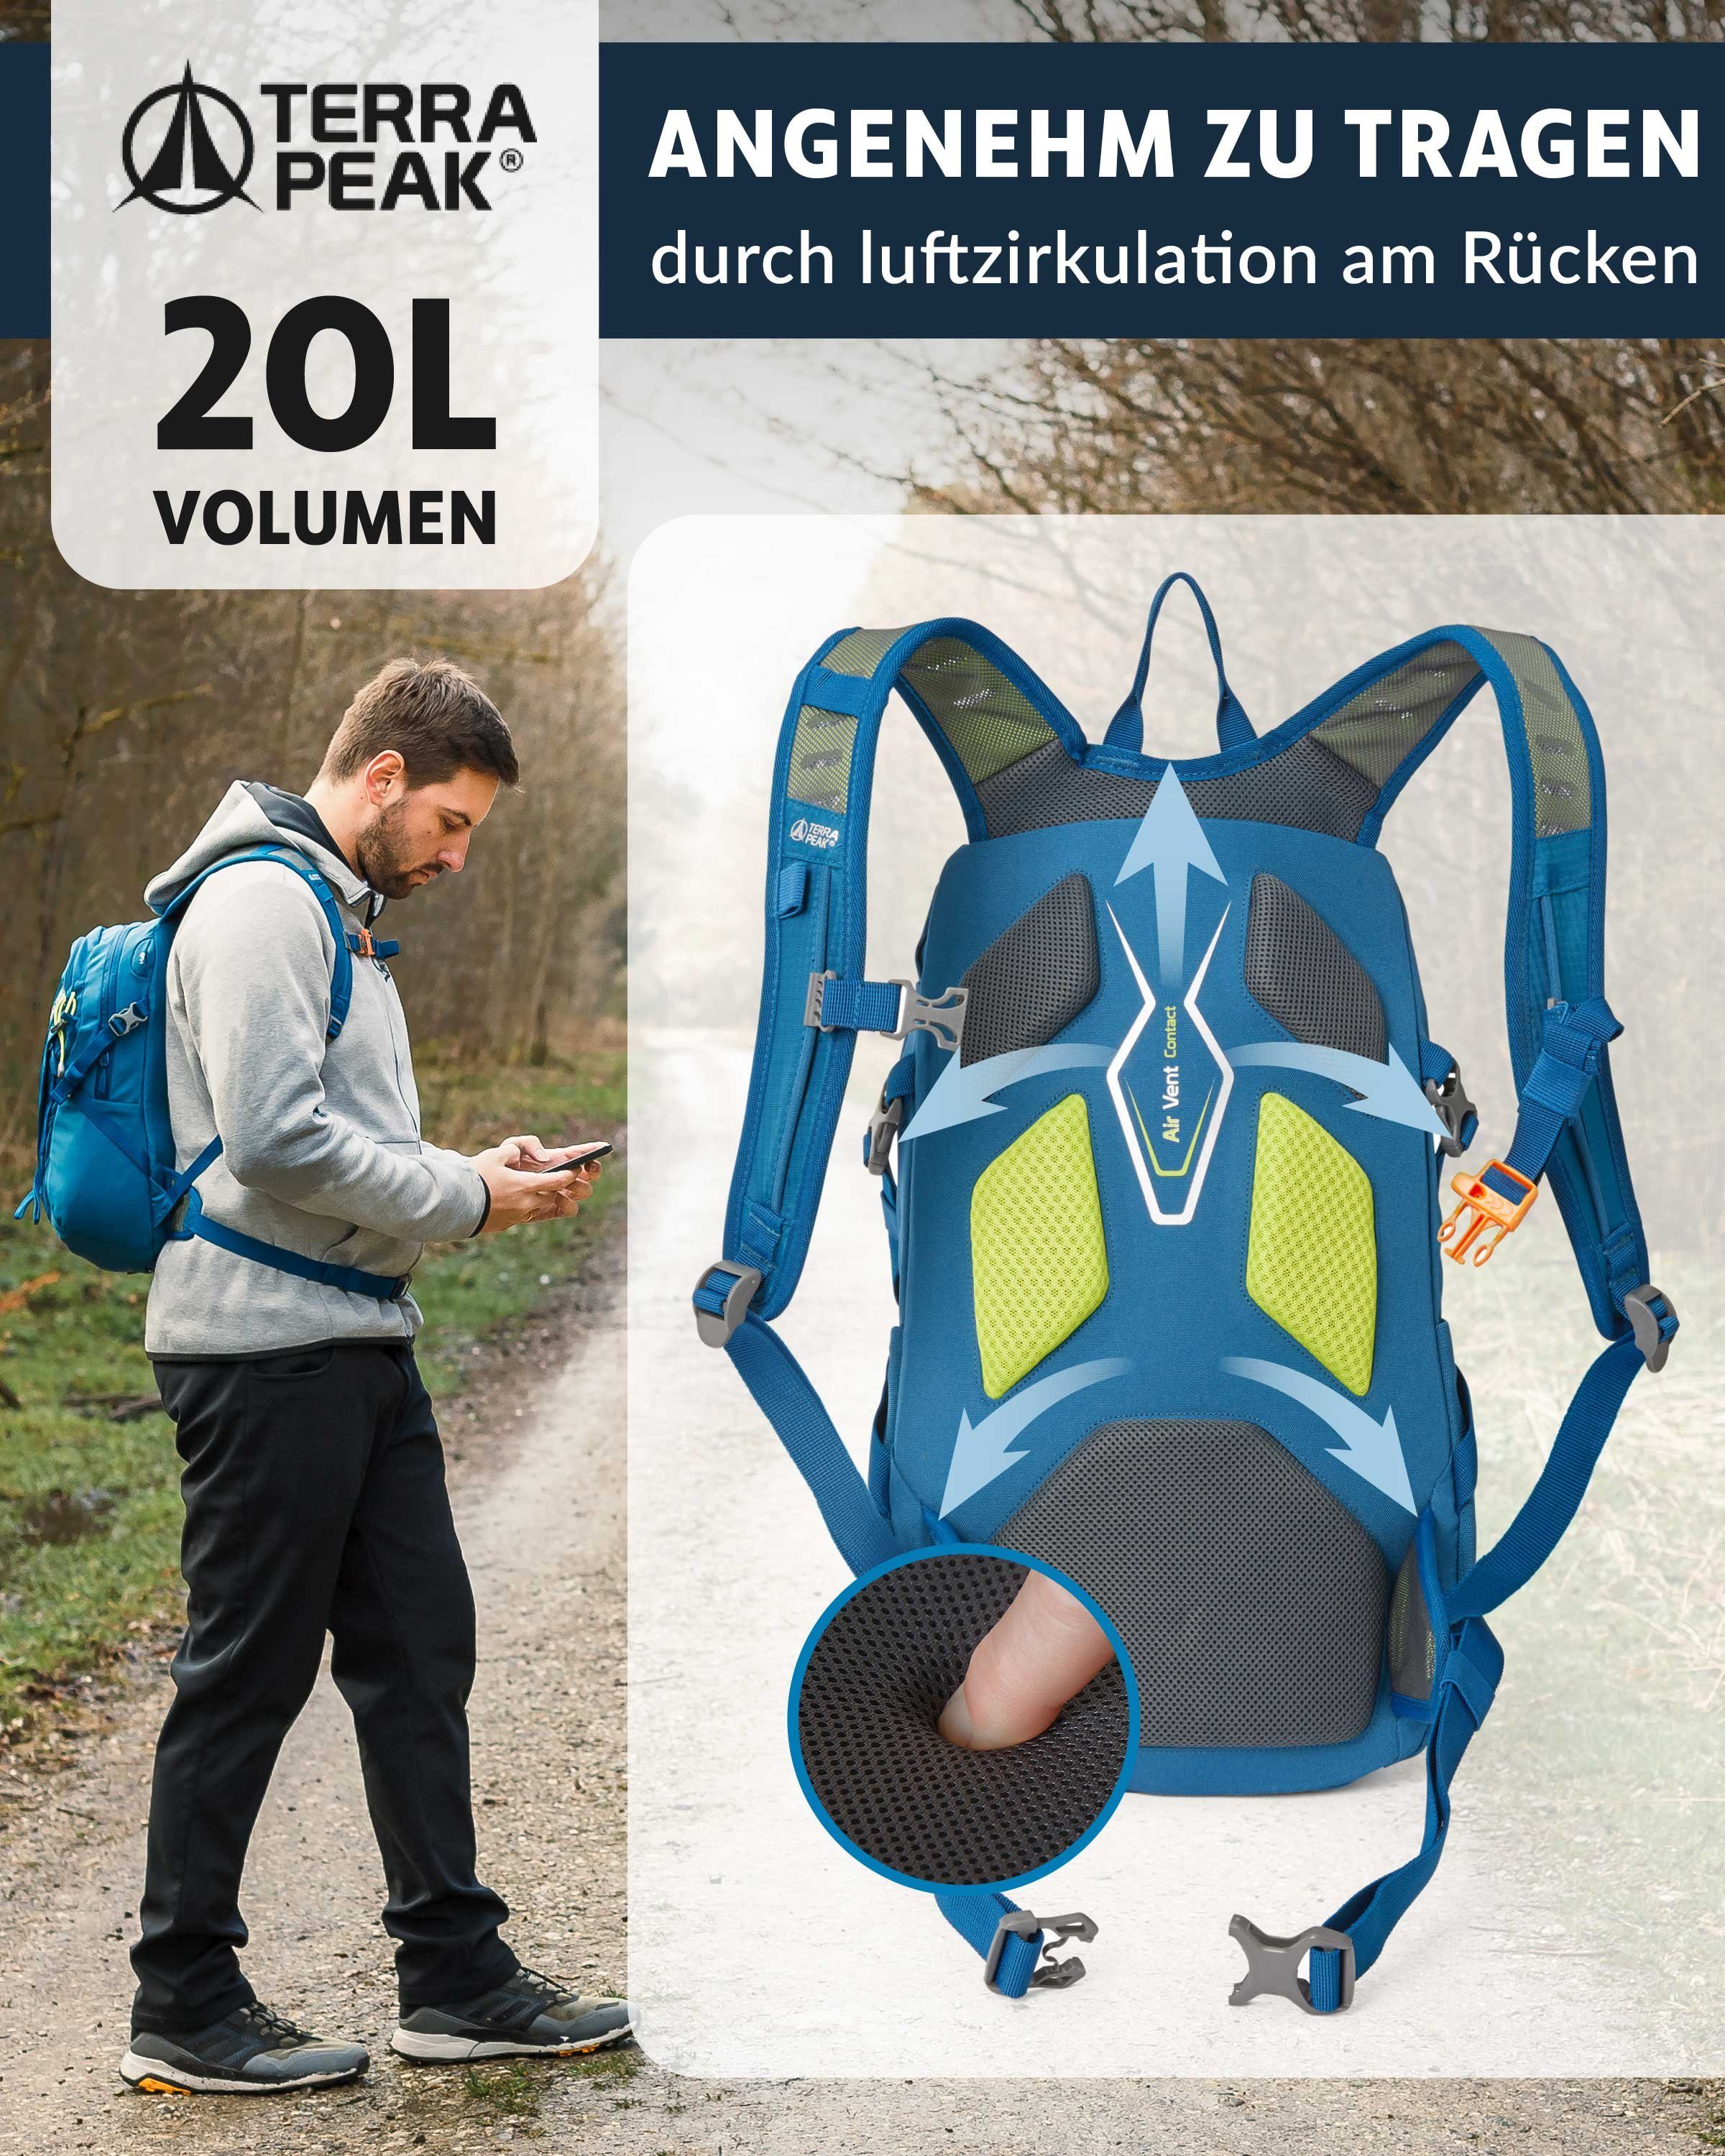 klein Sportrucksack YKK Reißverschluss Hüftgurt 20L Trekkingrucksack Blau mit 20, Terra Peak Active mit